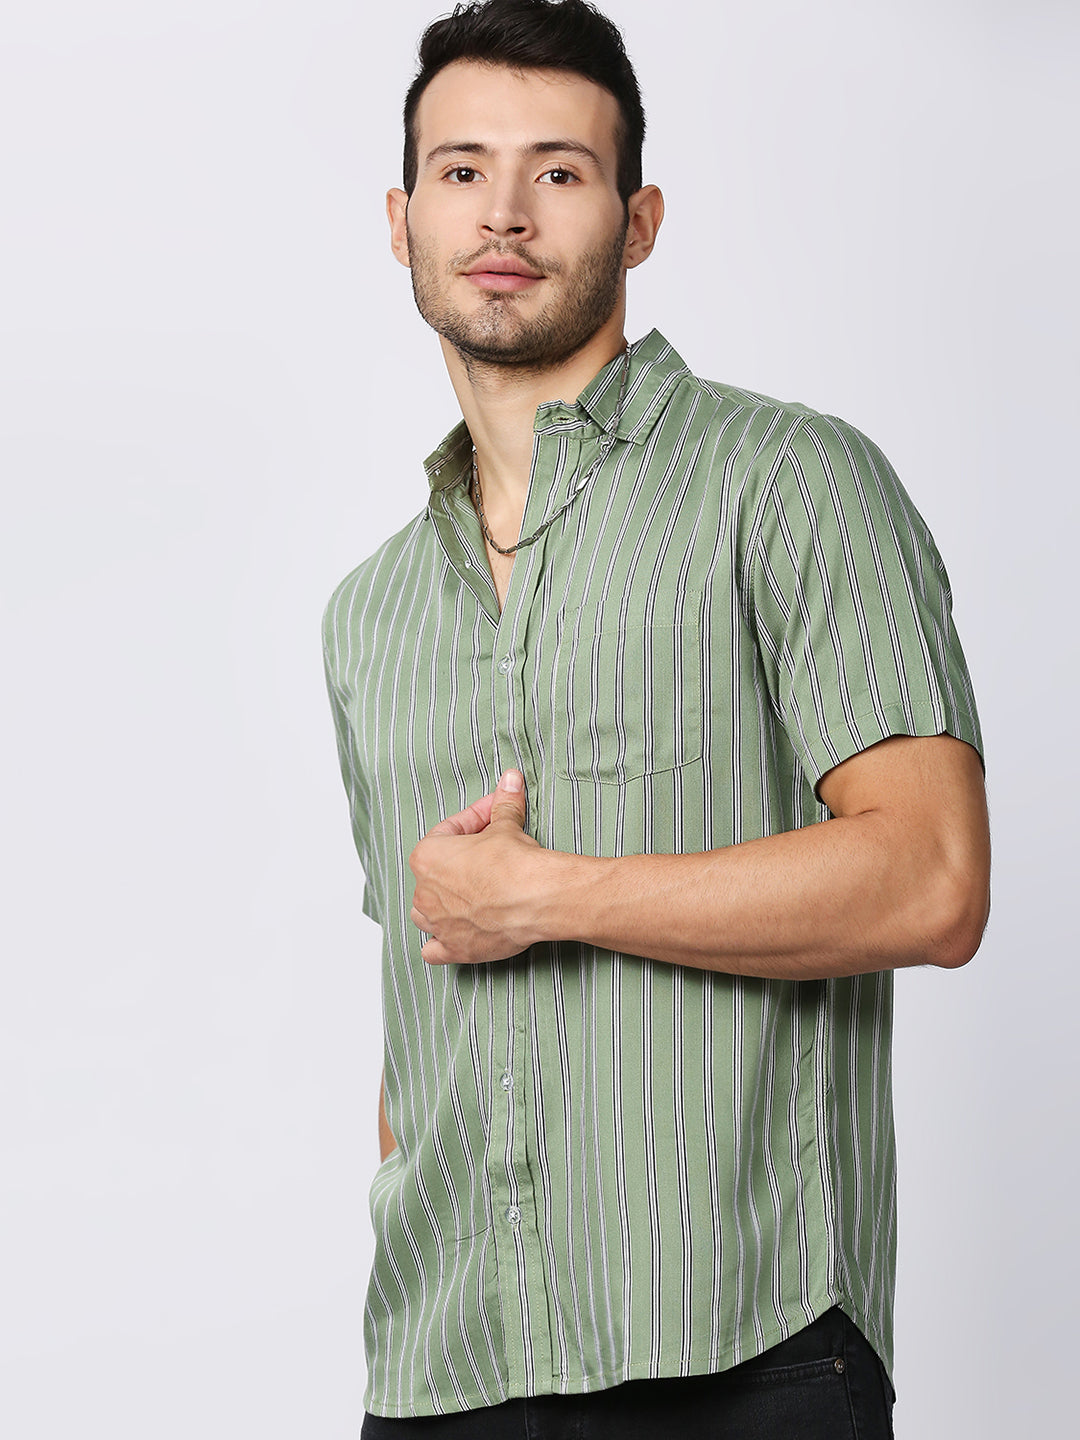 Zest Green Pinstripes Half Sleeve Shirt